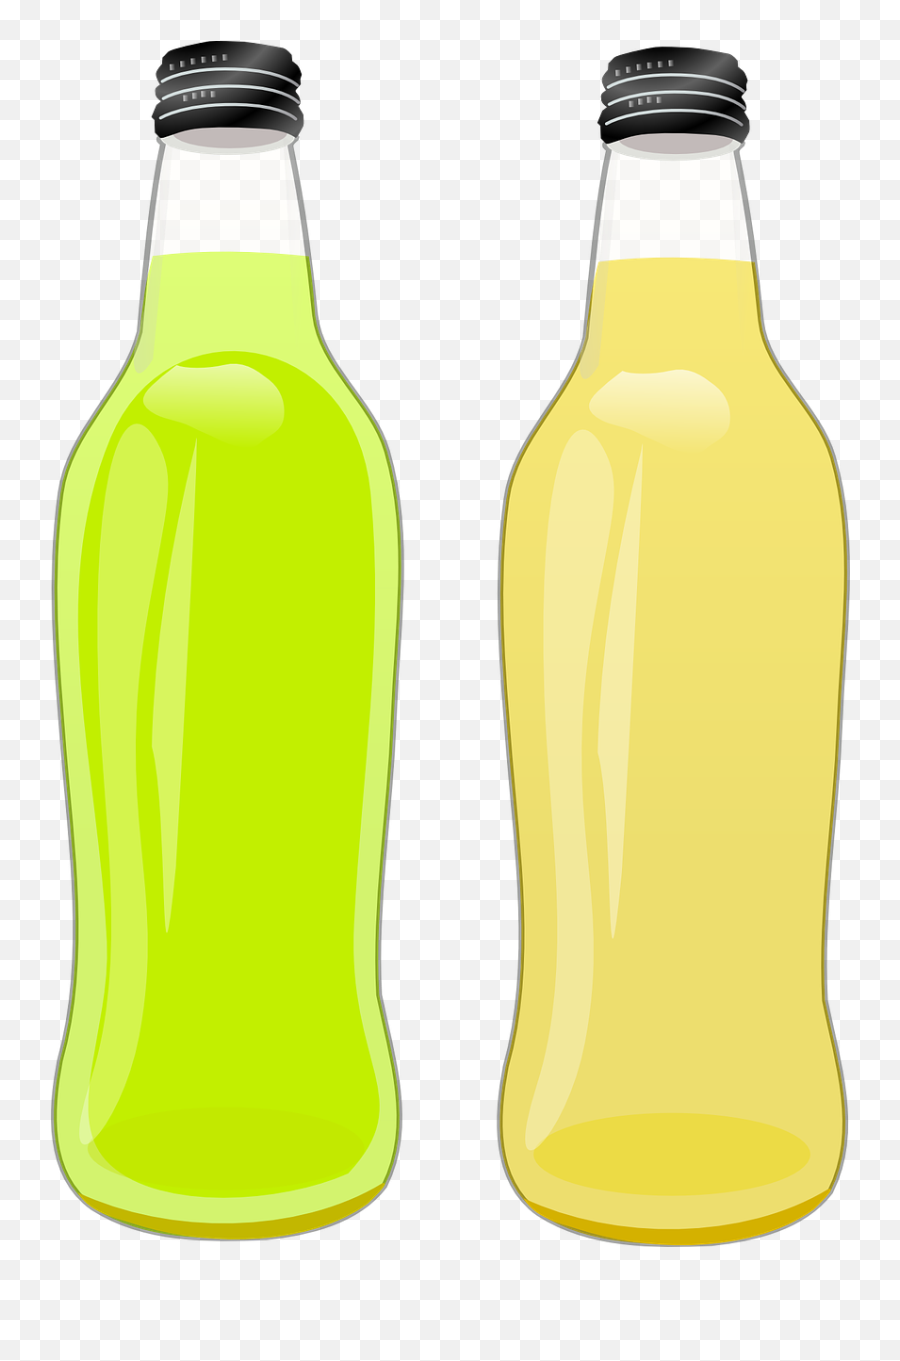 Bottle Drink Pop Bottles Png Picpng - Bottle Emoji,Potion Bottle Clipart